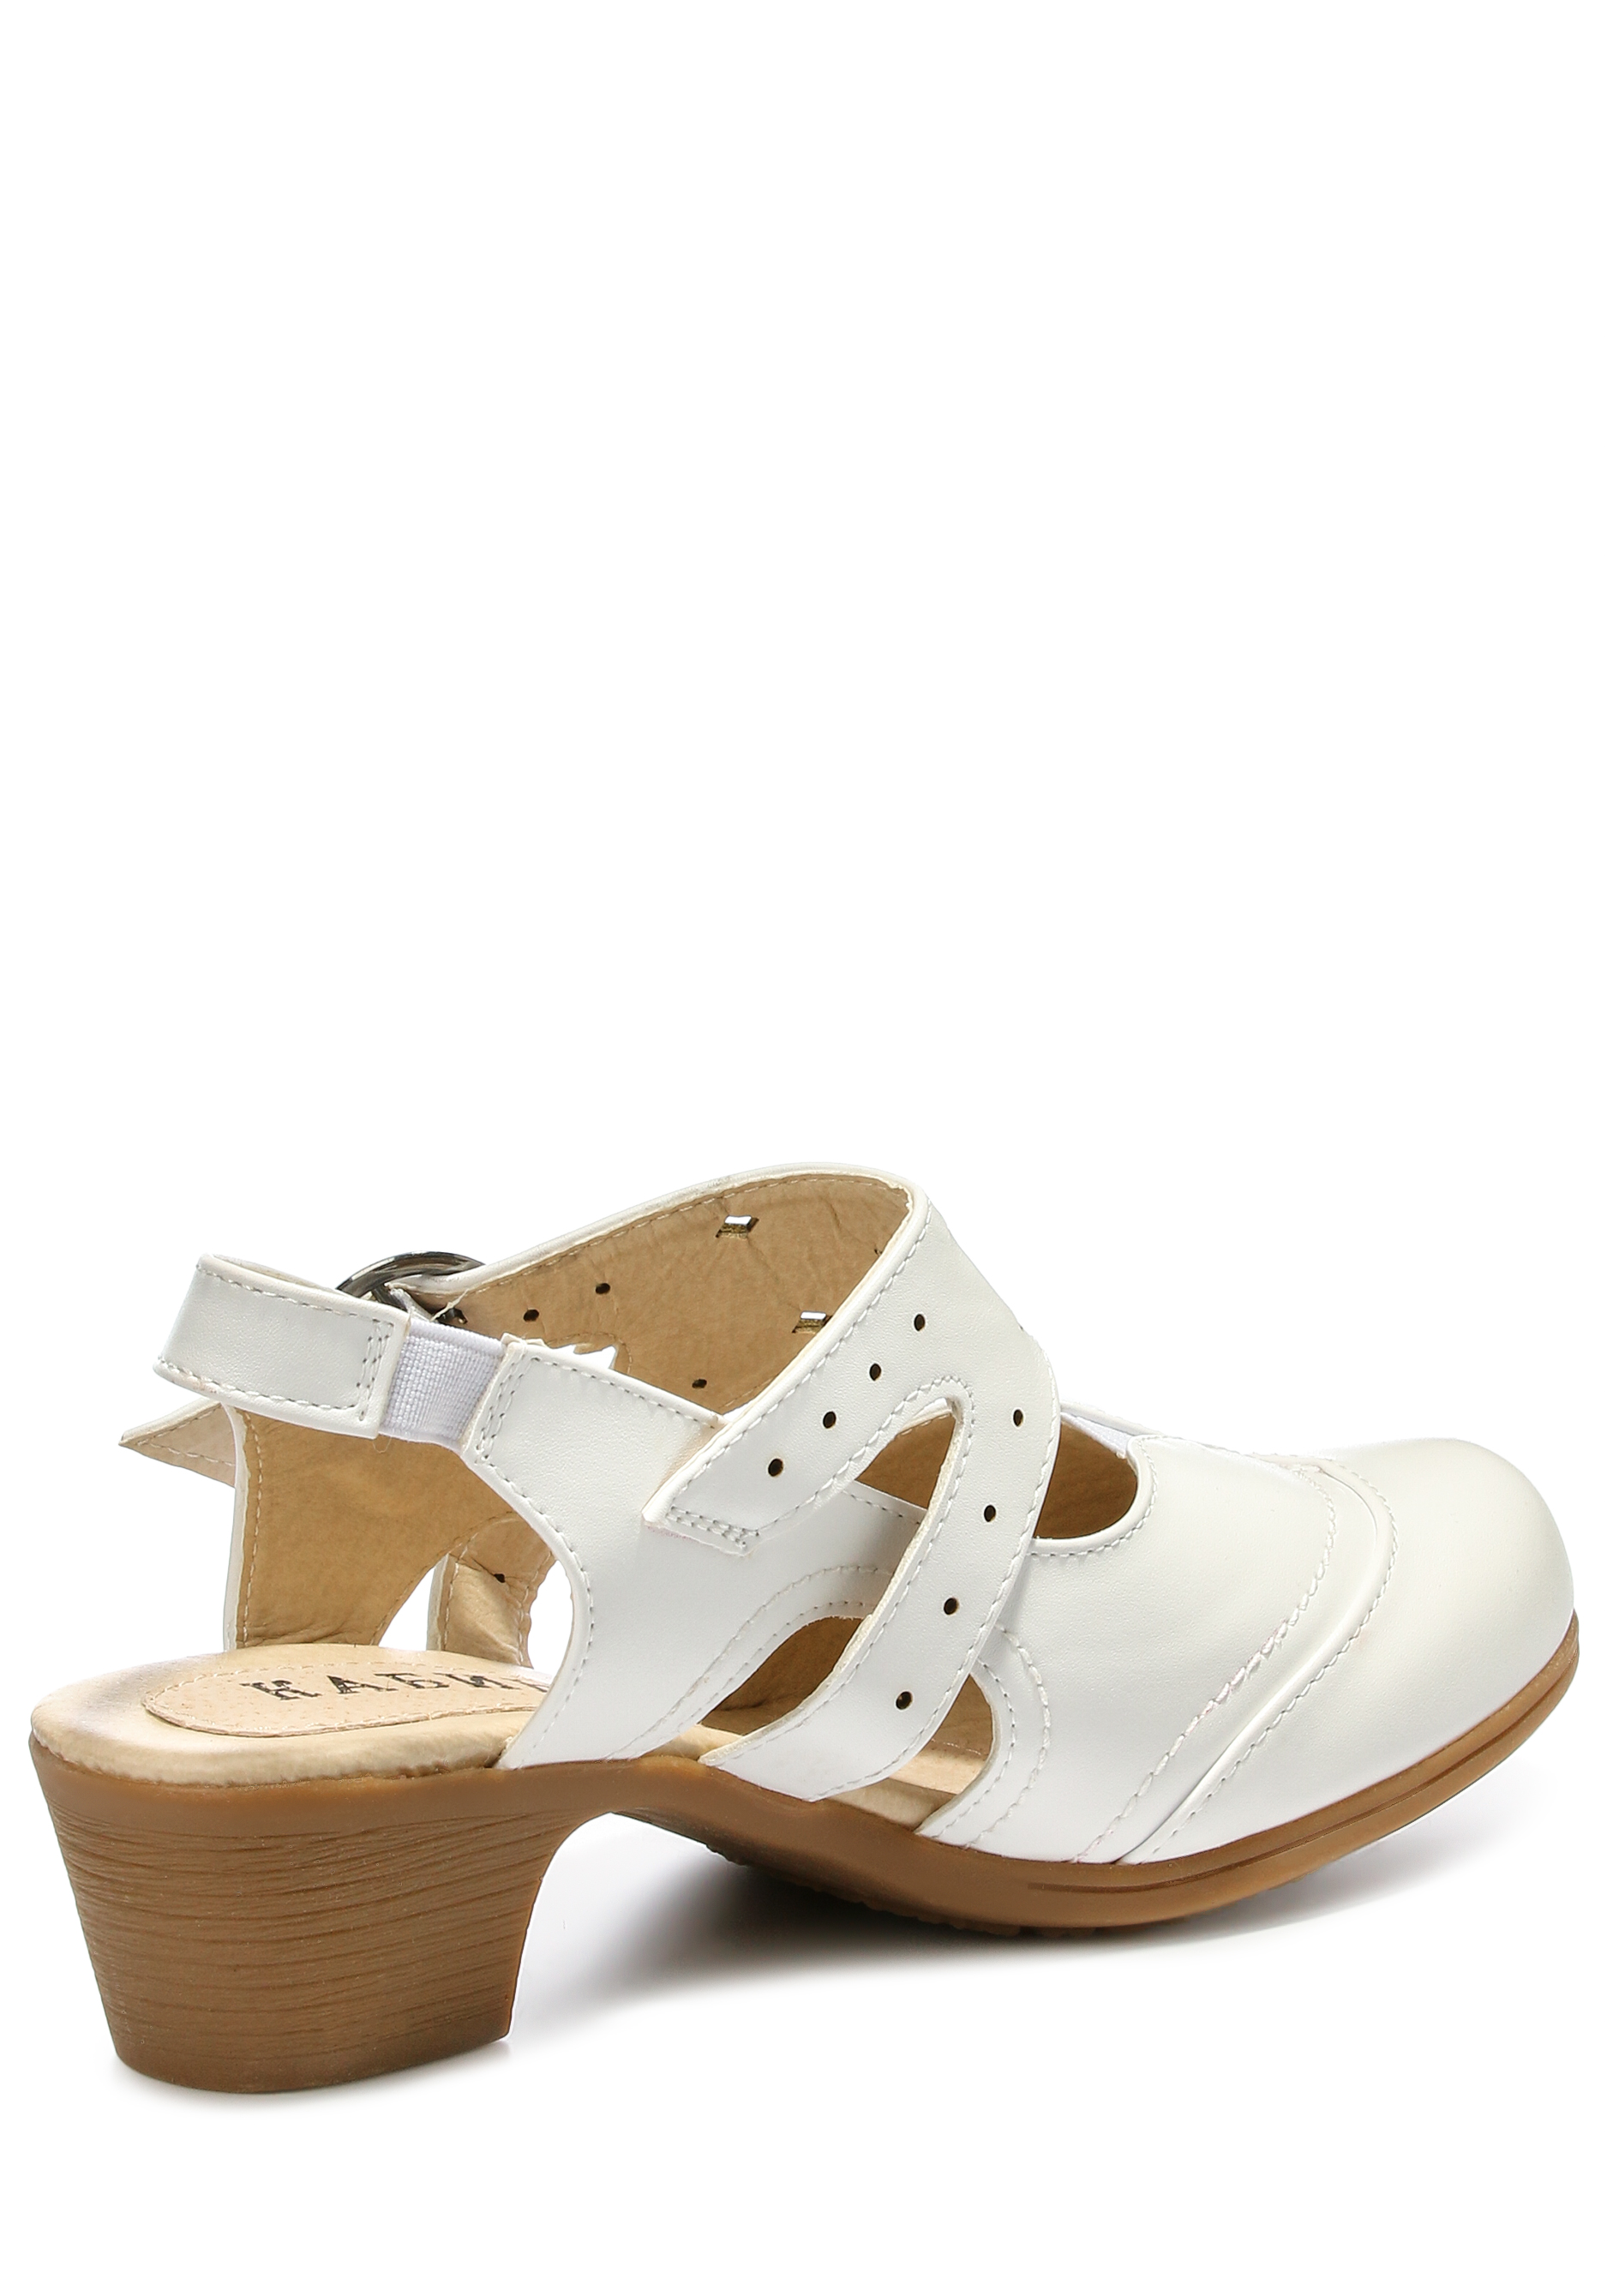 Туфли женские "Ариель", цвет белый, размер 38 - фото 3